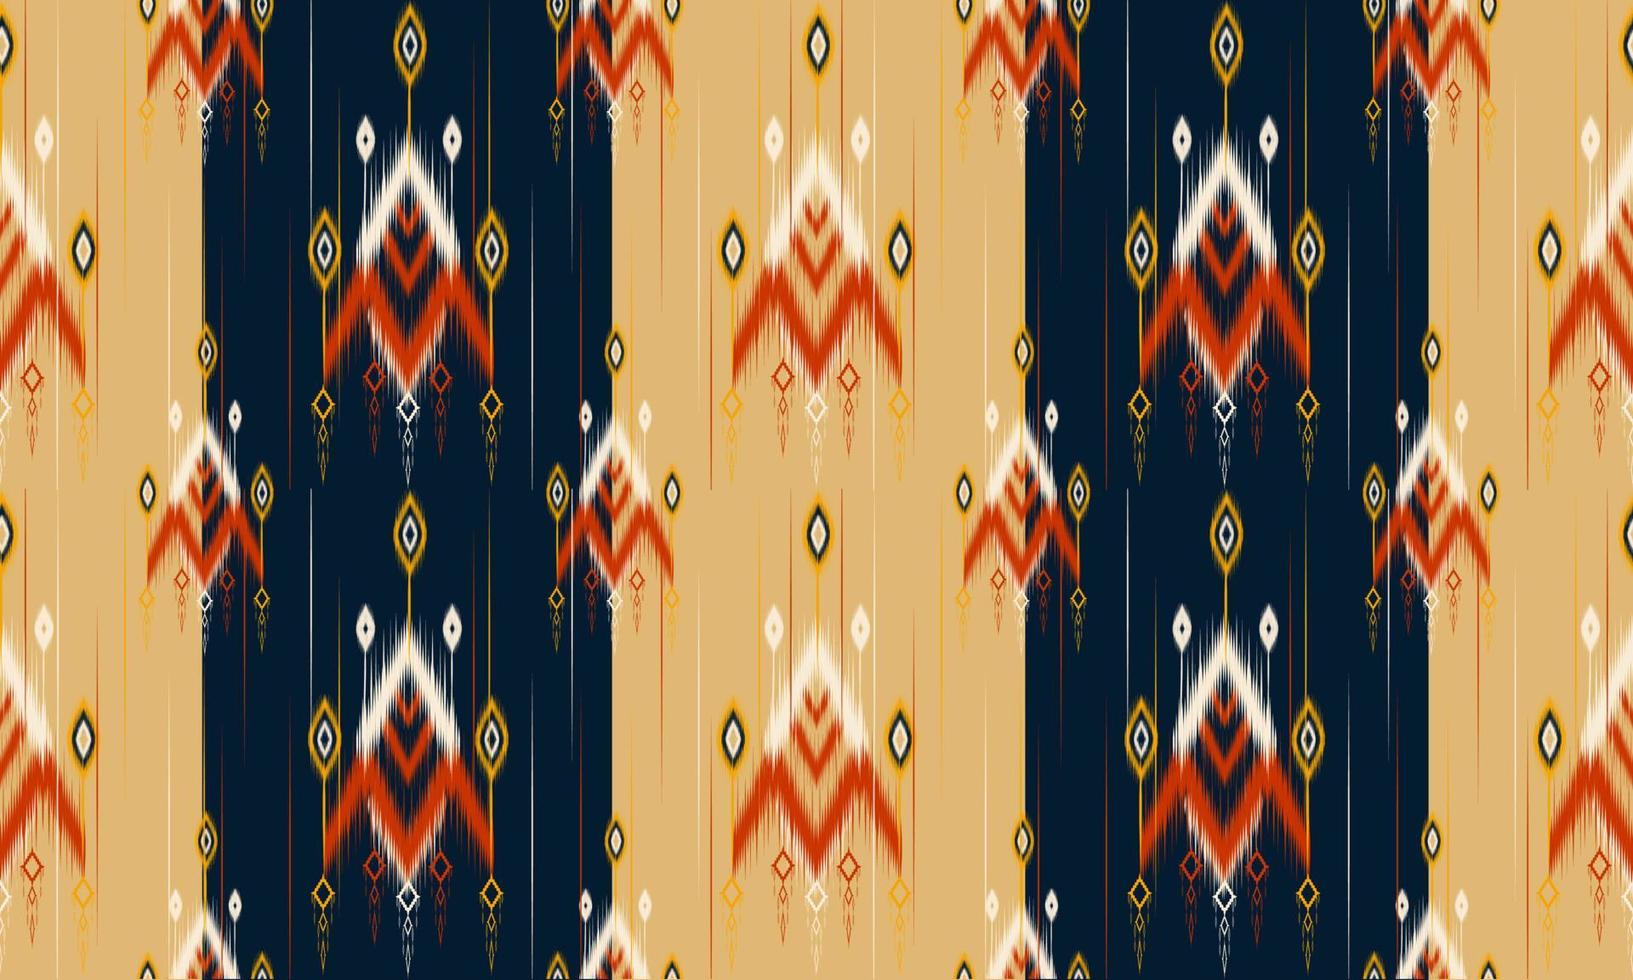 disegno tradizionale motivo geometrico etnico orientale per sfondo, moquette, carta da parati, abbigliamento, avvolgimento, batik, tessuto, illustrazione vettoriale. stile ricamo. vettore